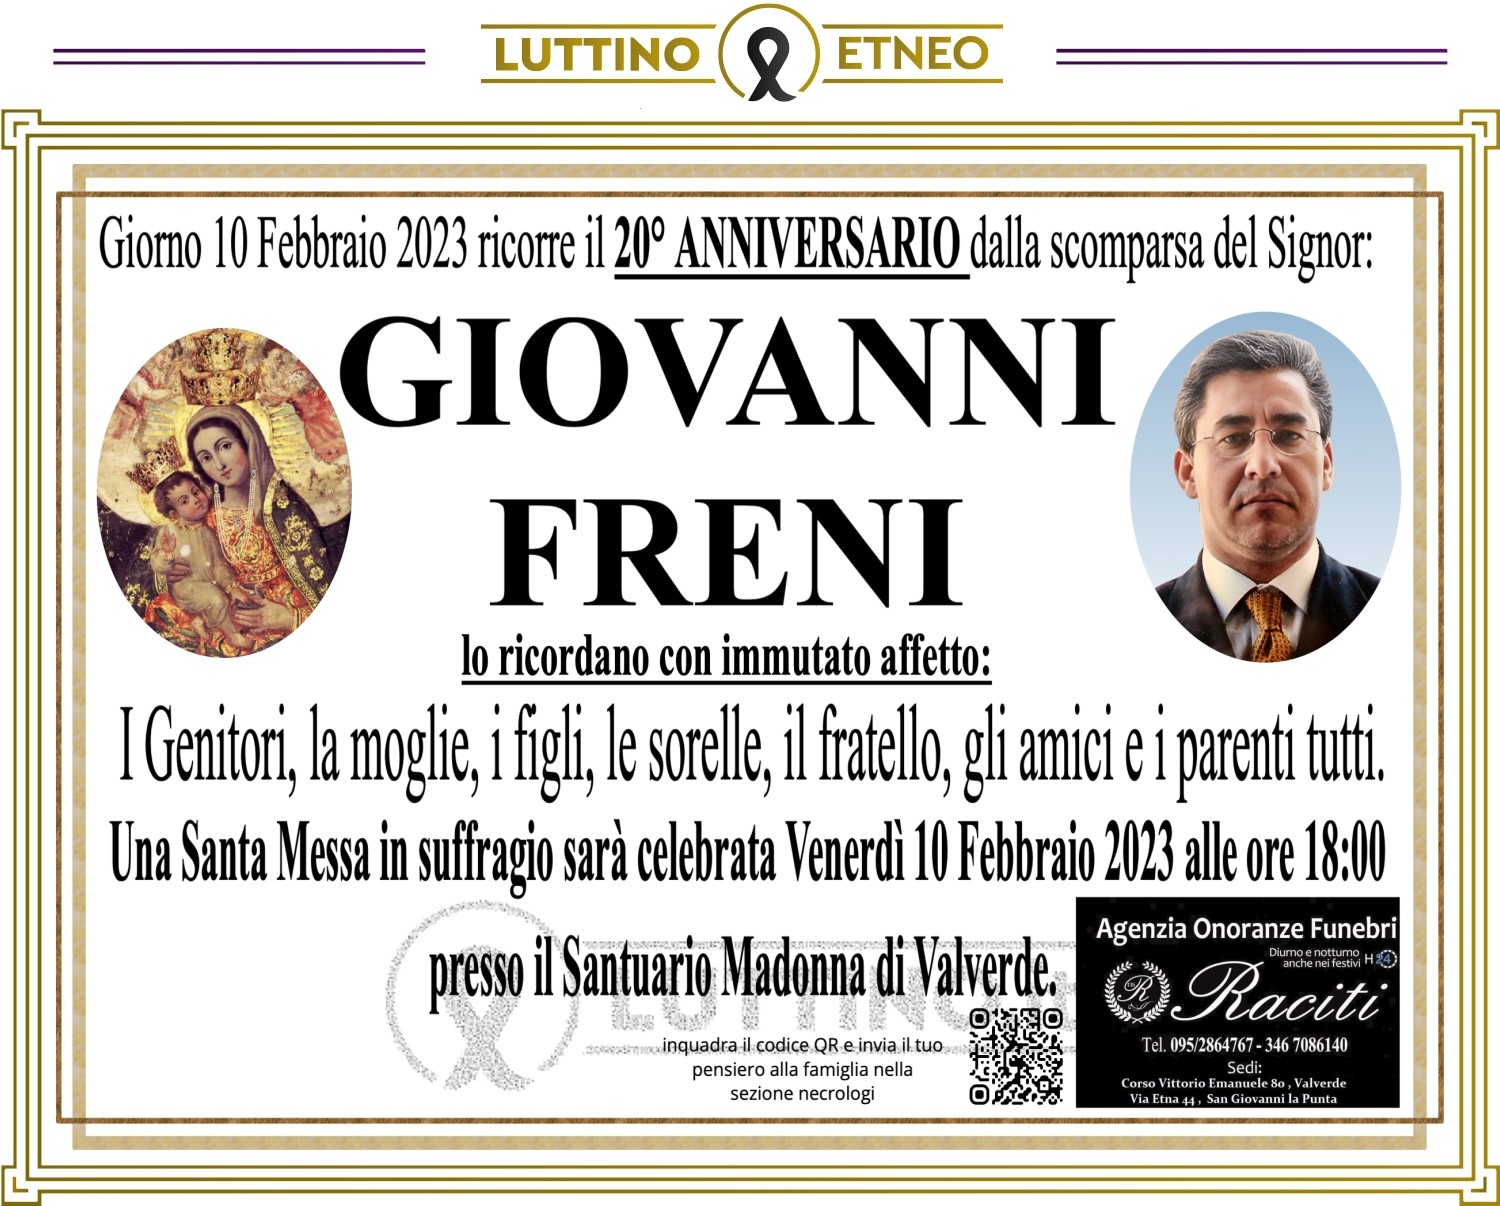 Giovanni Freni